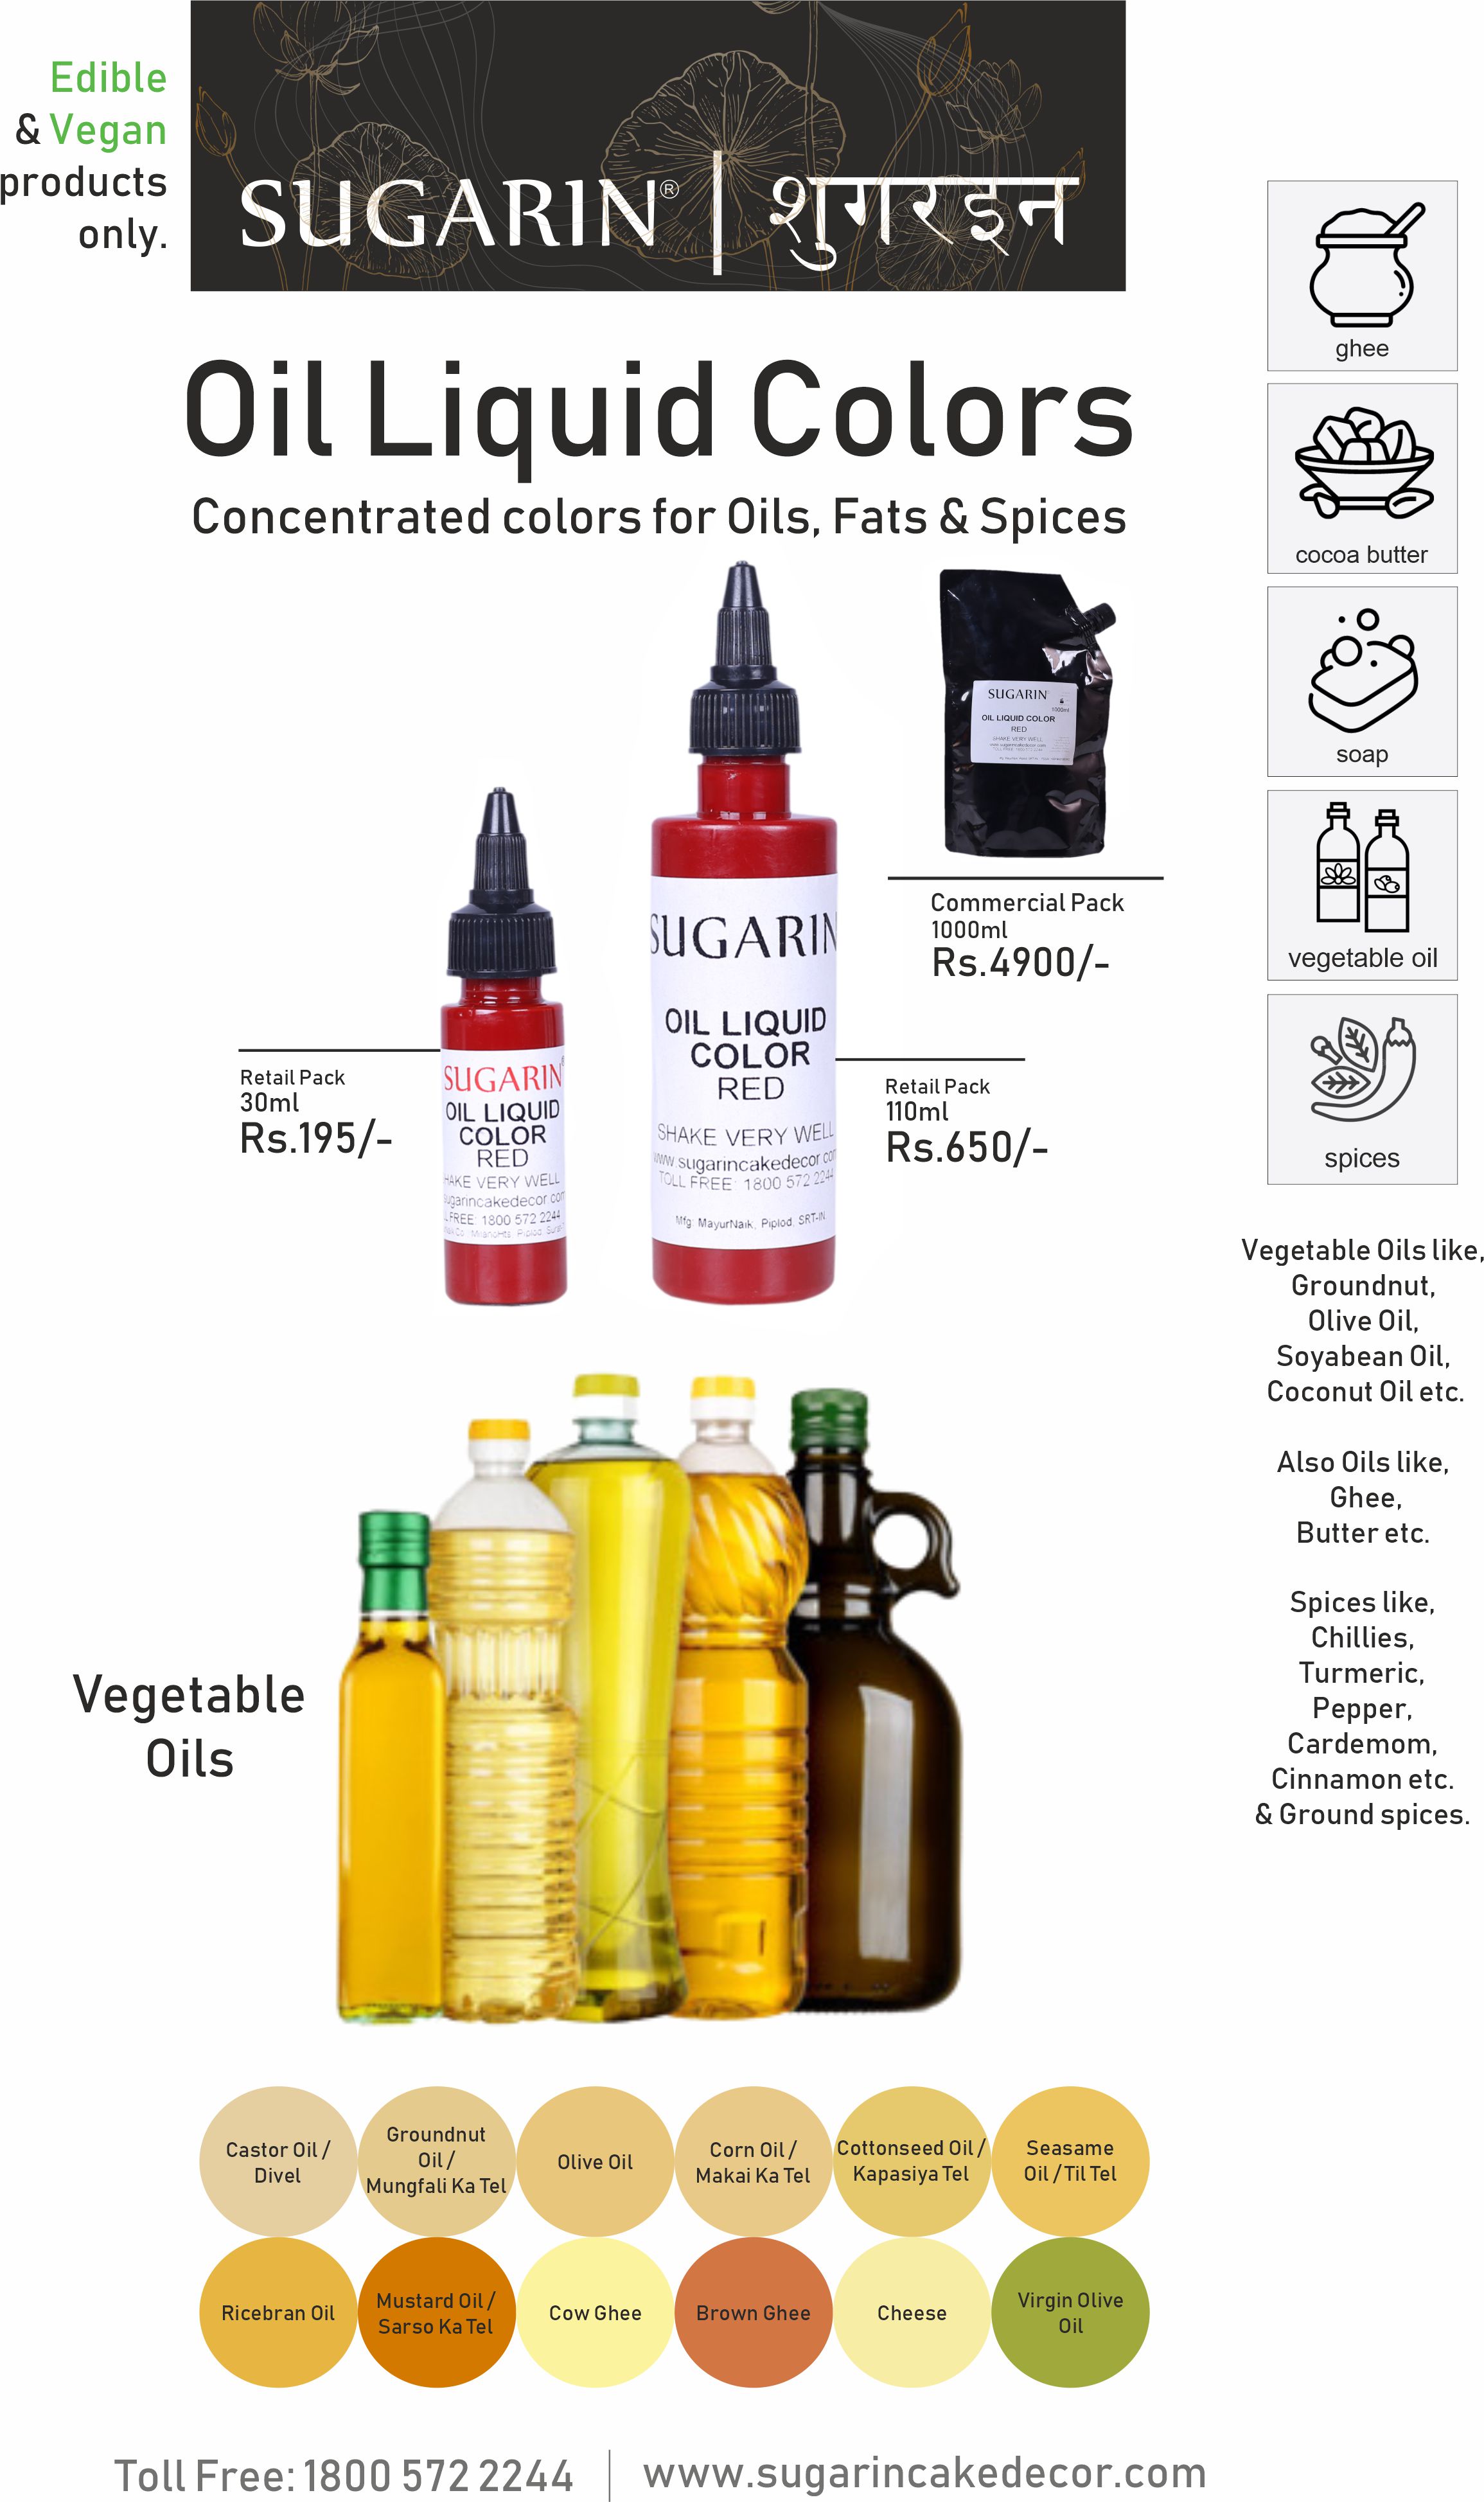 Sugarin Oil Liquid Colors | 30ml